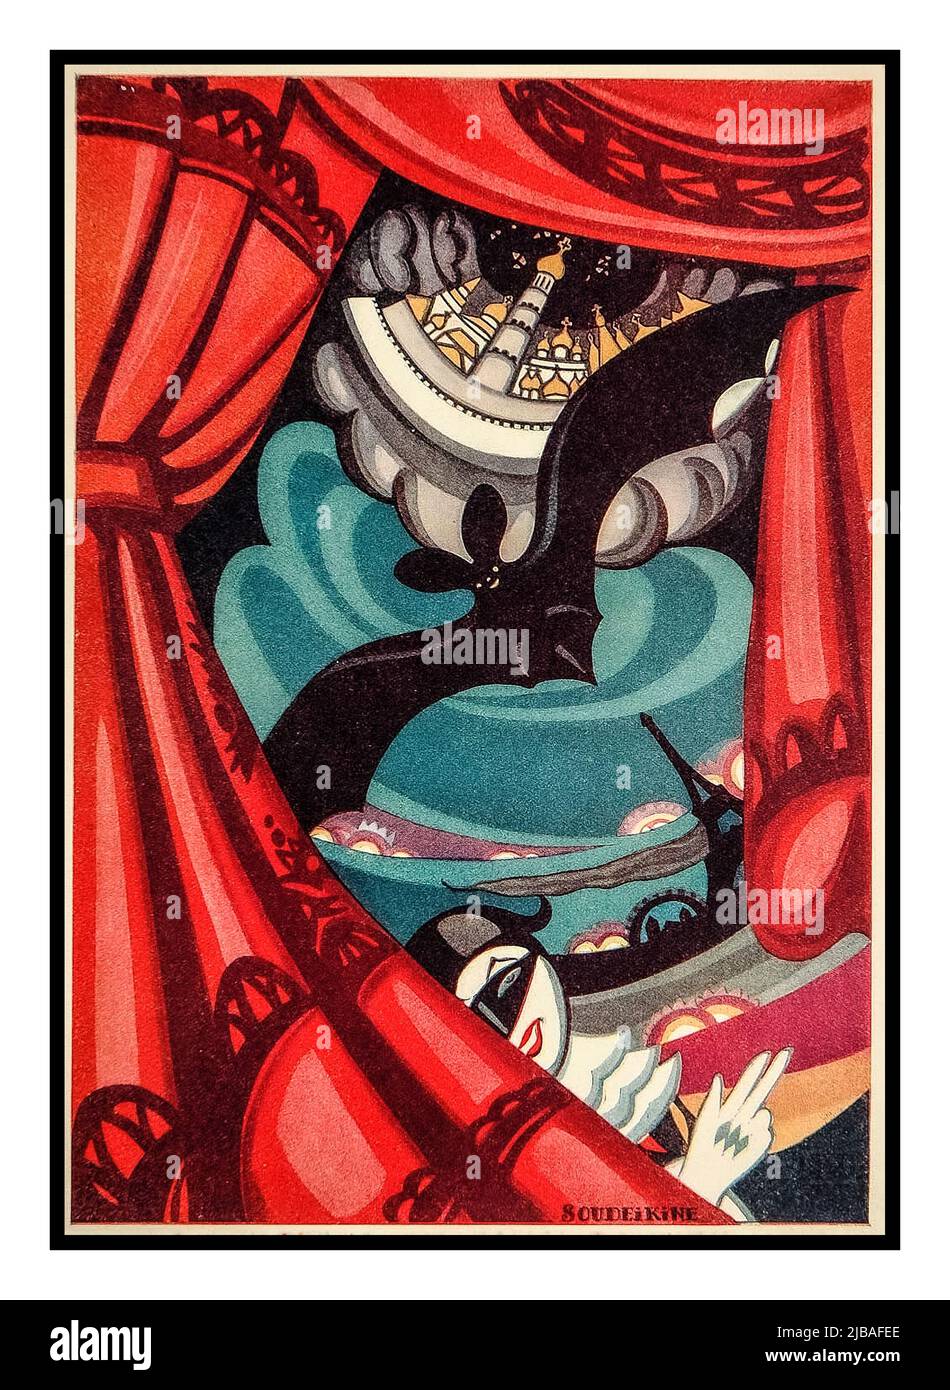 Vintage 1920s russe Soviet Entertainment Poster 'Bat Theatre' à Moscou. Affiche conçue par Sergei Soudeikine. Union soviétique de Moscou URSS Date 1922 Banque D'Images